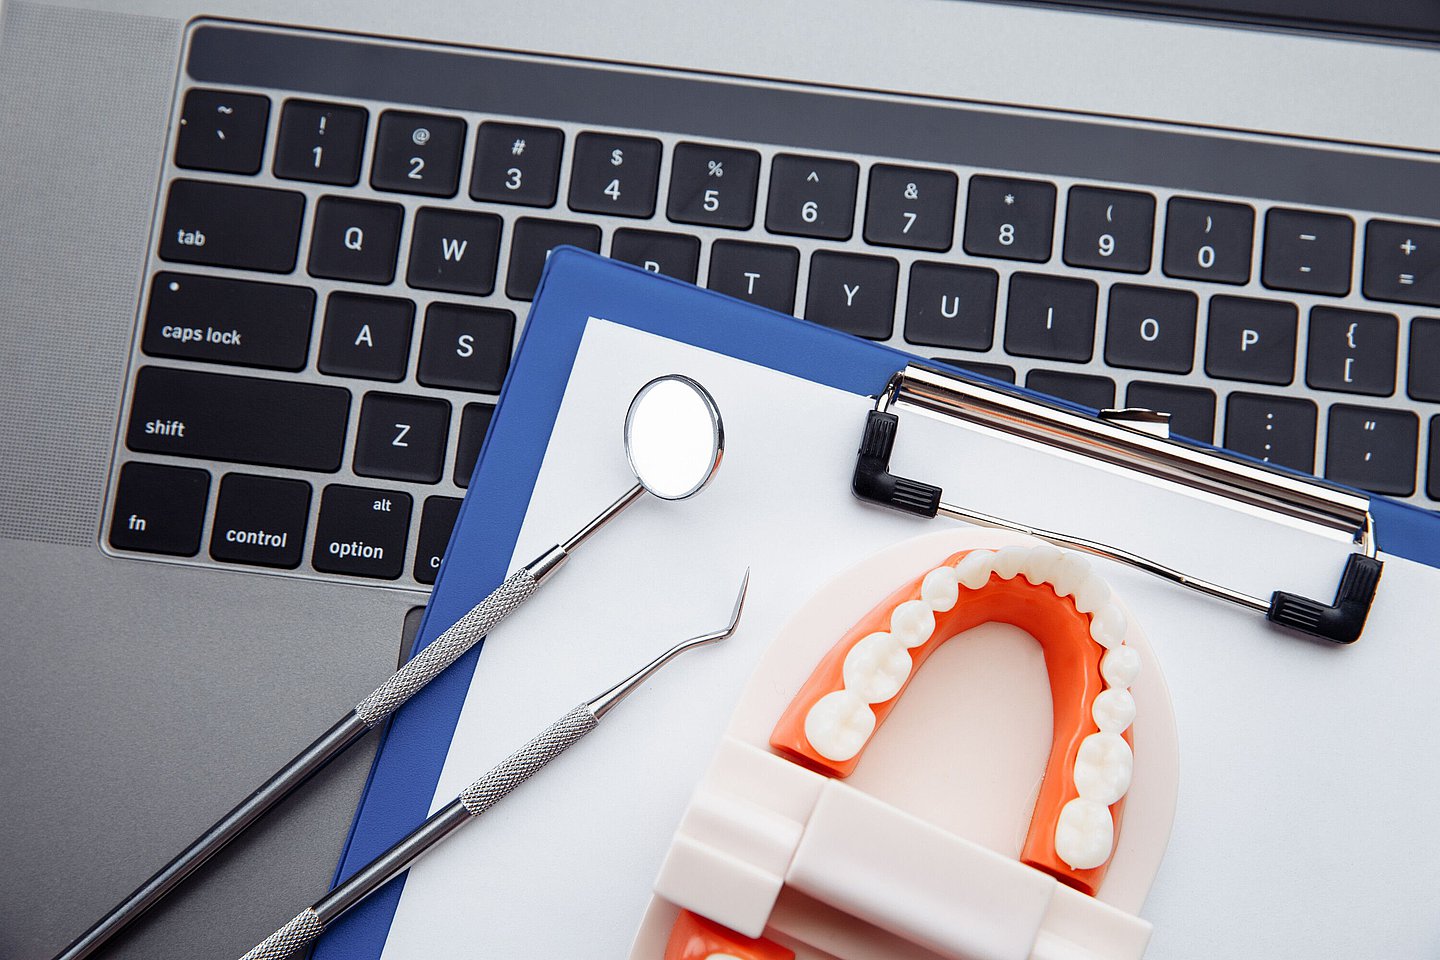 Zahnarztbesteck liegt mit einer Klemmmappe auf einer Tastatur.